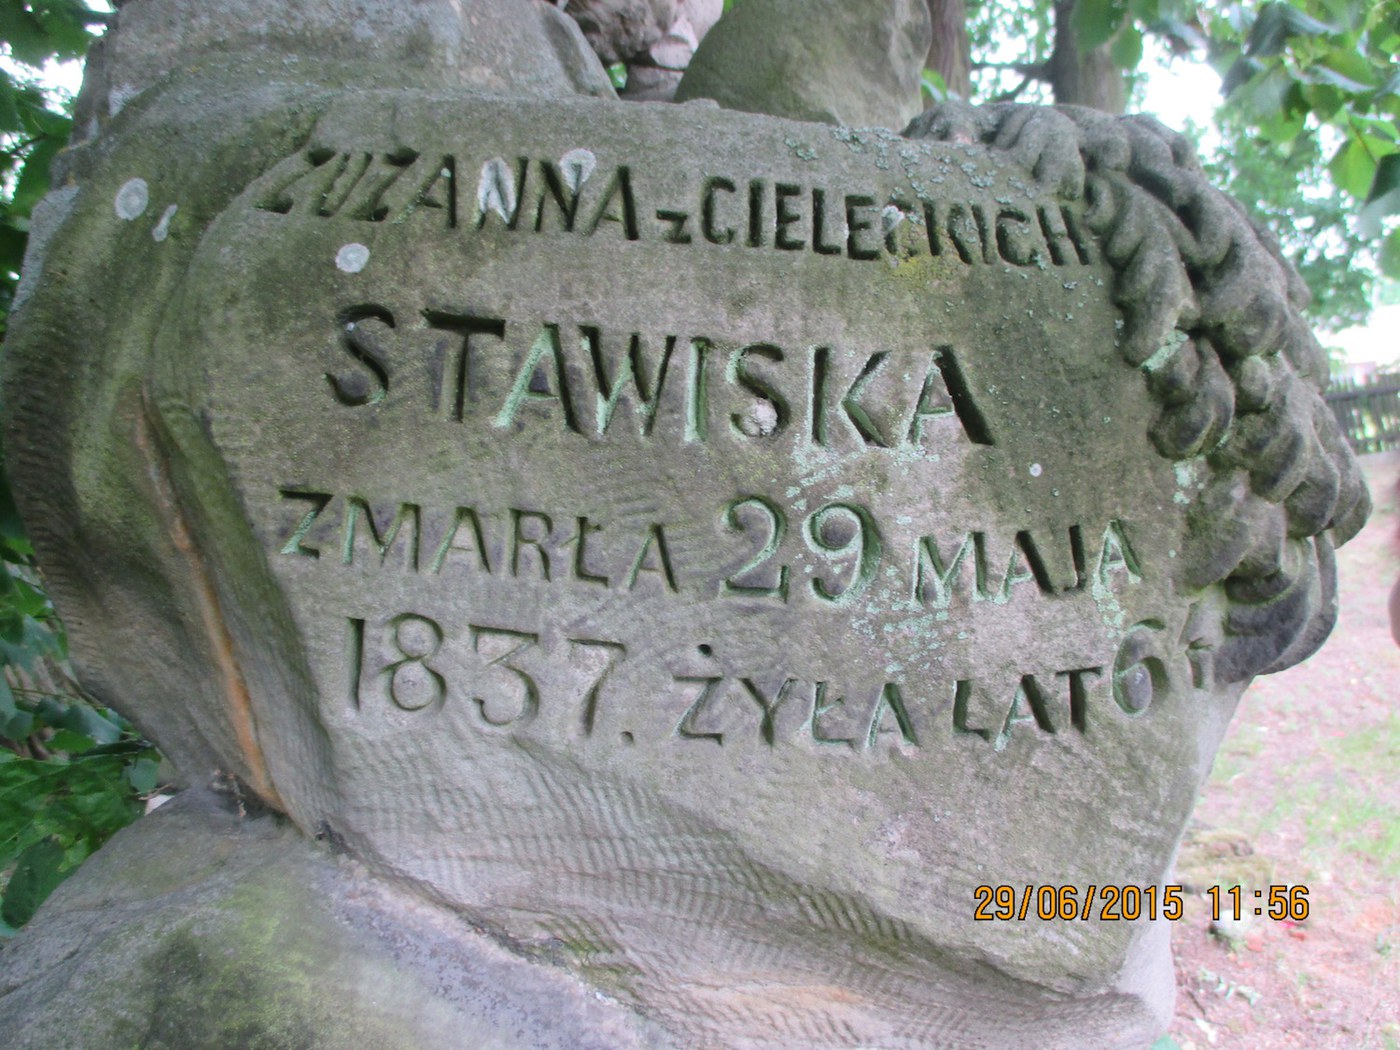 Zuzanna z Cielecki Stawiska-Grab in Kliczkow Maly+1837